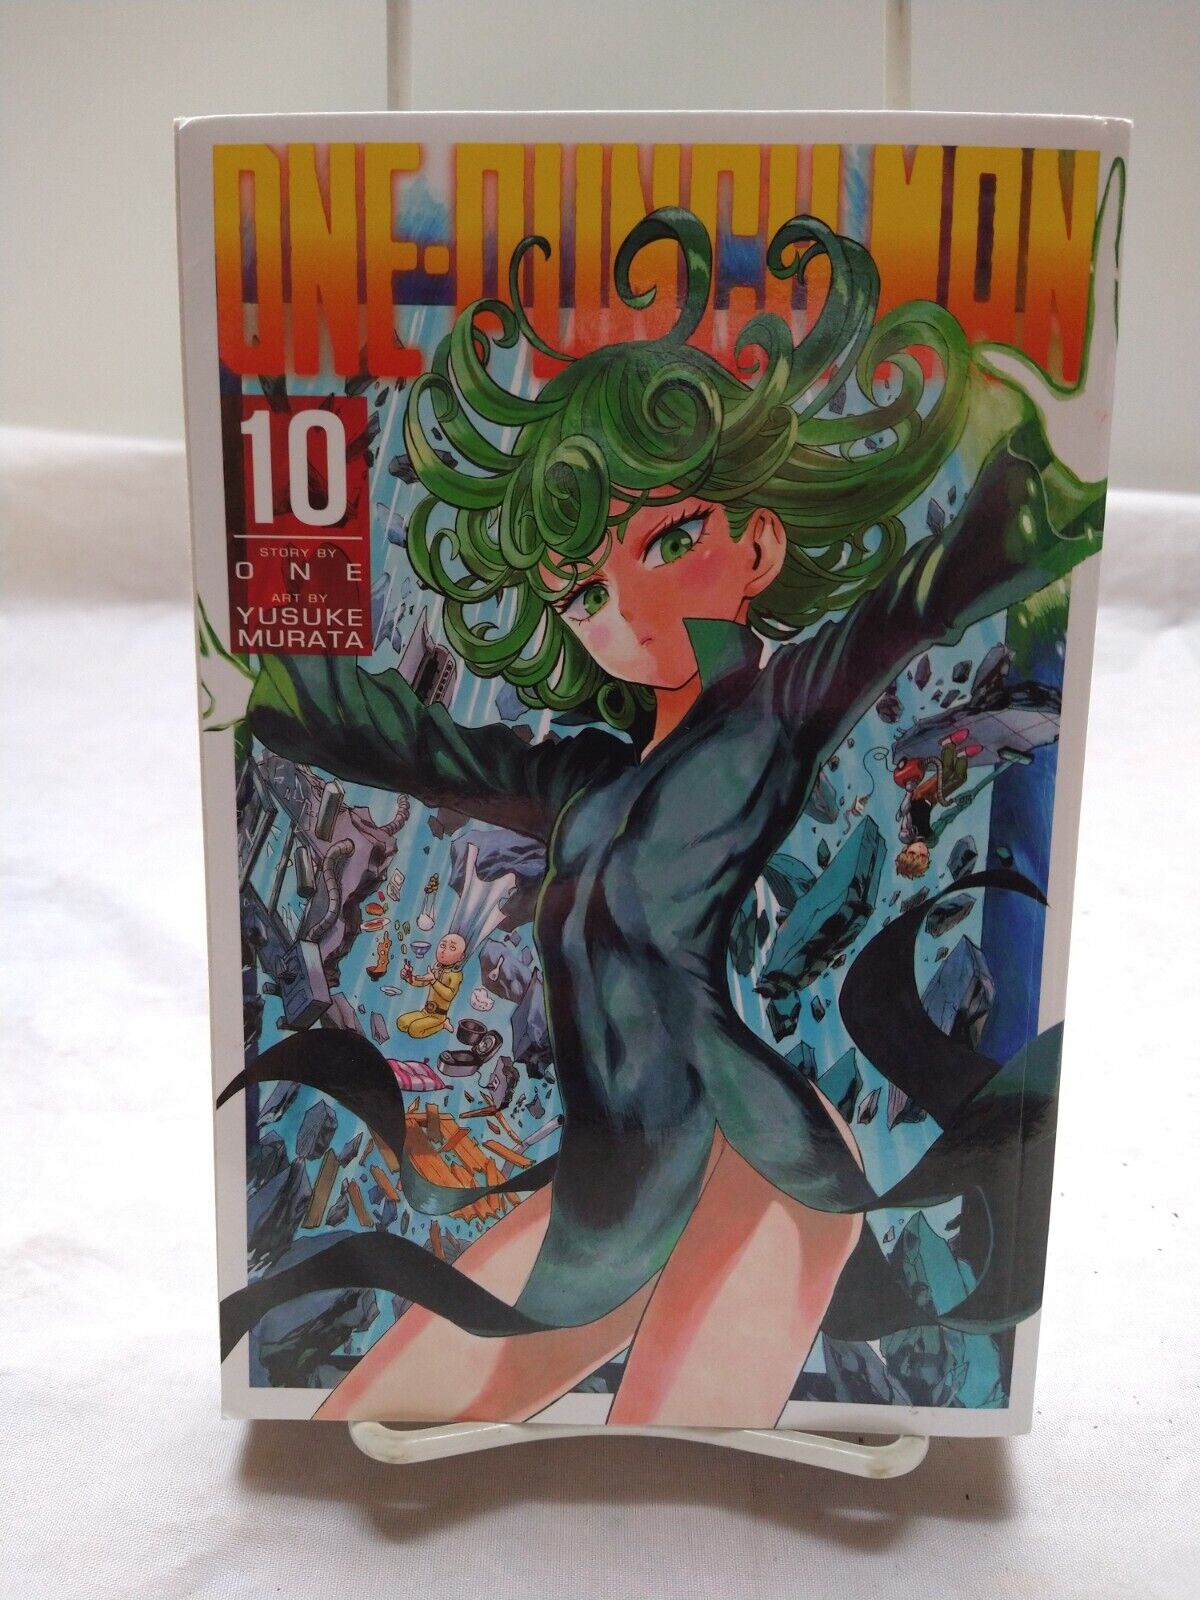 One-Punch Man Volume 10 O N E Yuskuke Murata Viz Media Shonen Jump